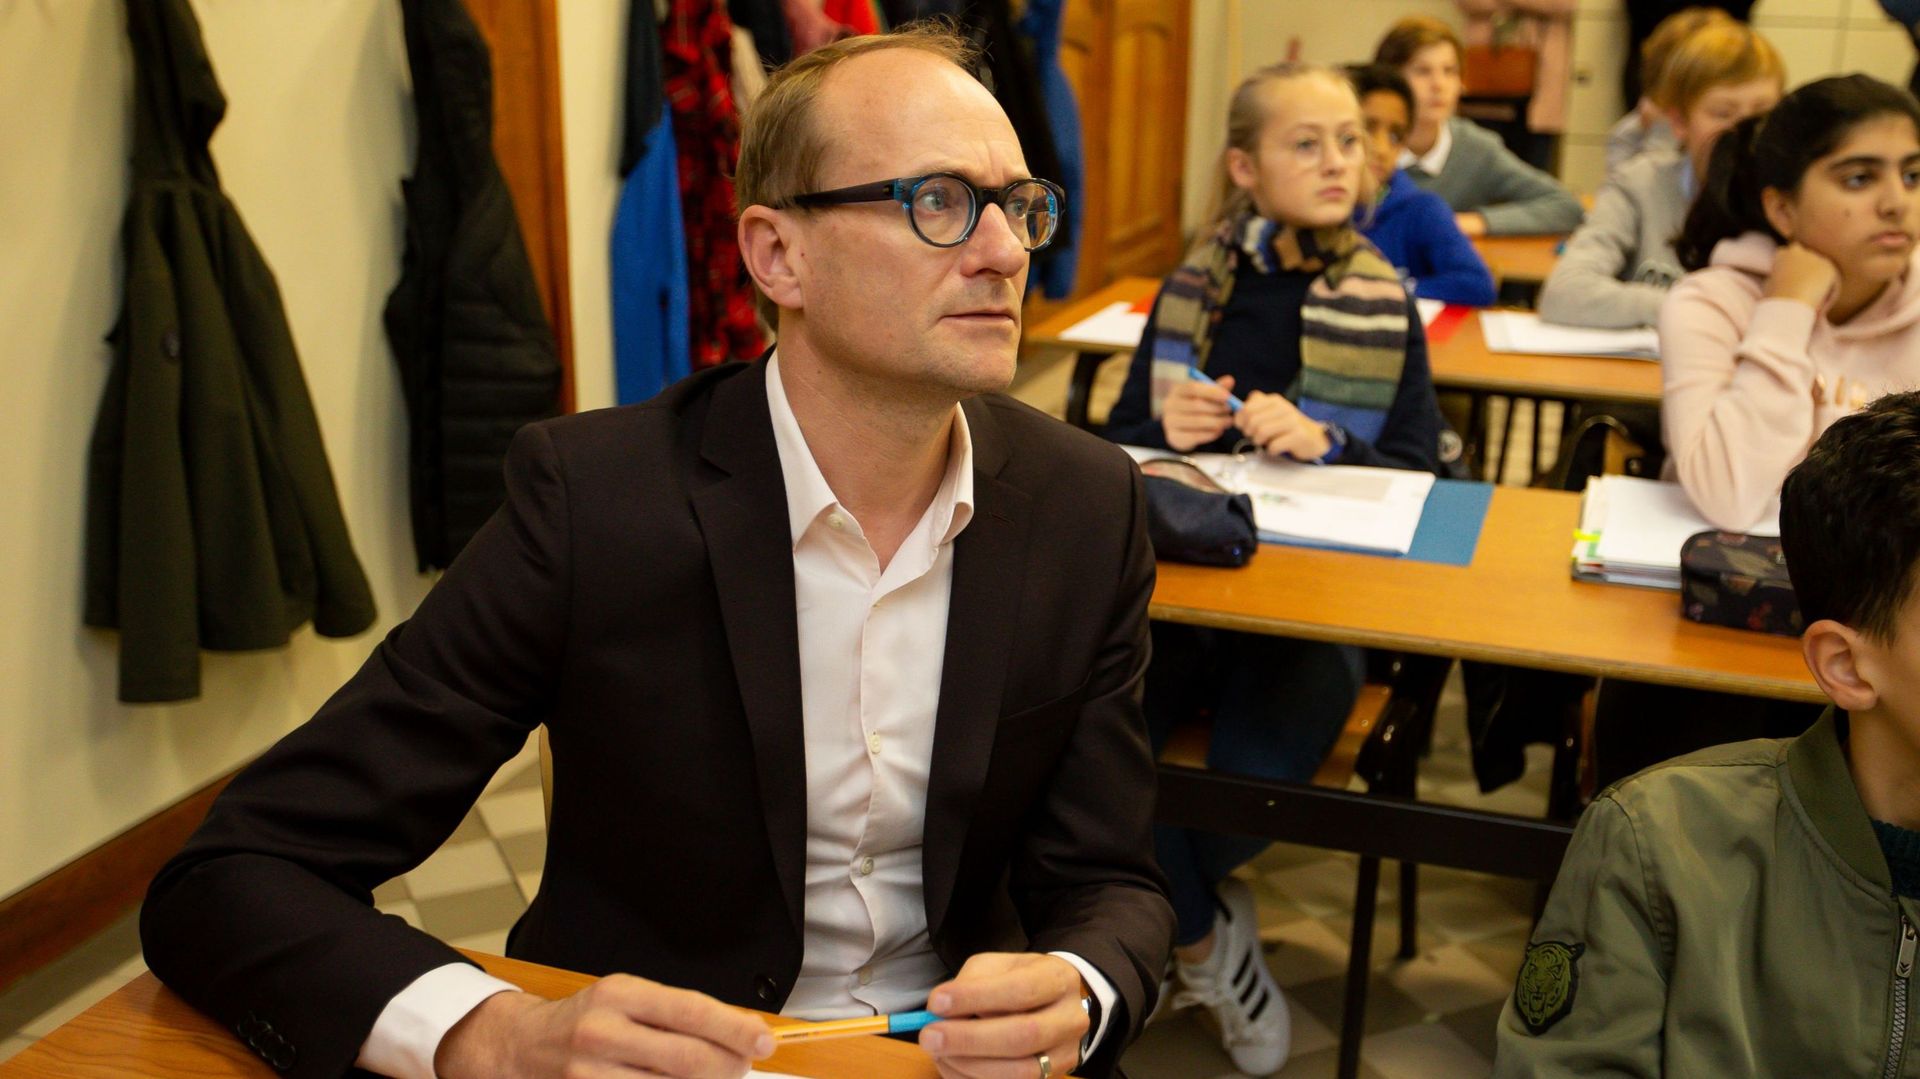 Ben Weyts dans une école de l'enseignement flamand à Bruxelles-Ville, le 06 novembre 2019